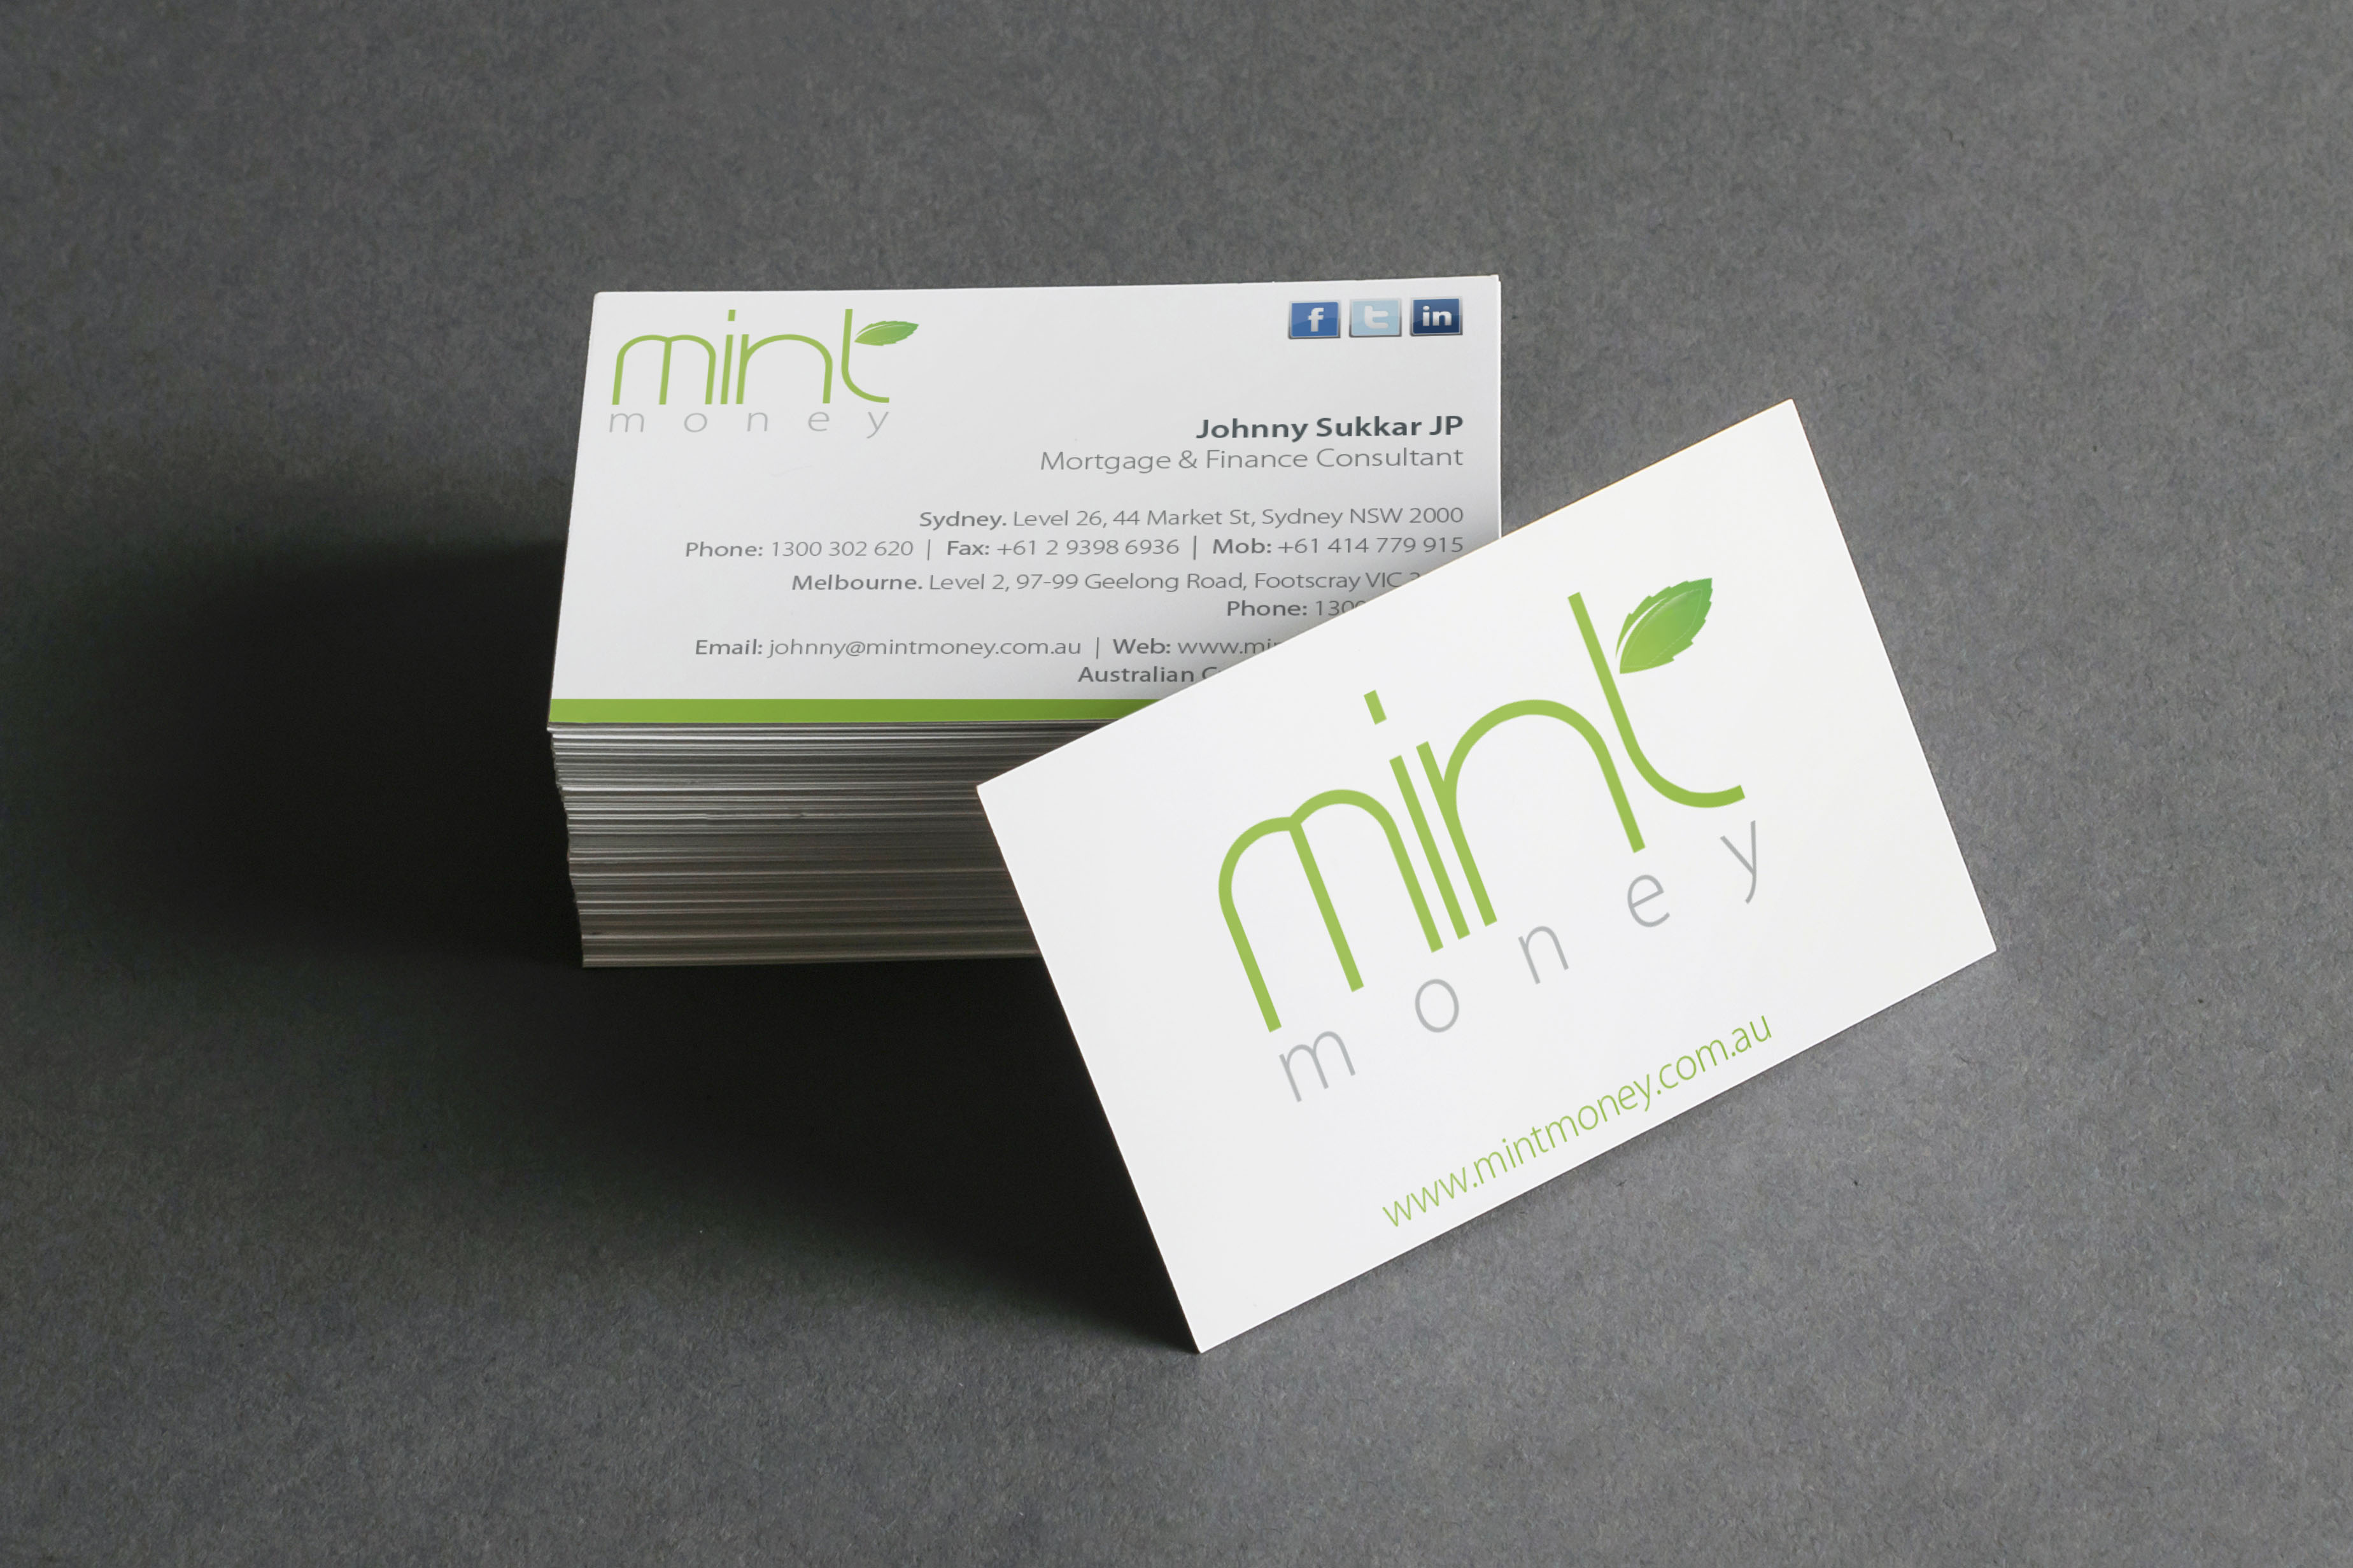 Mint Money business card